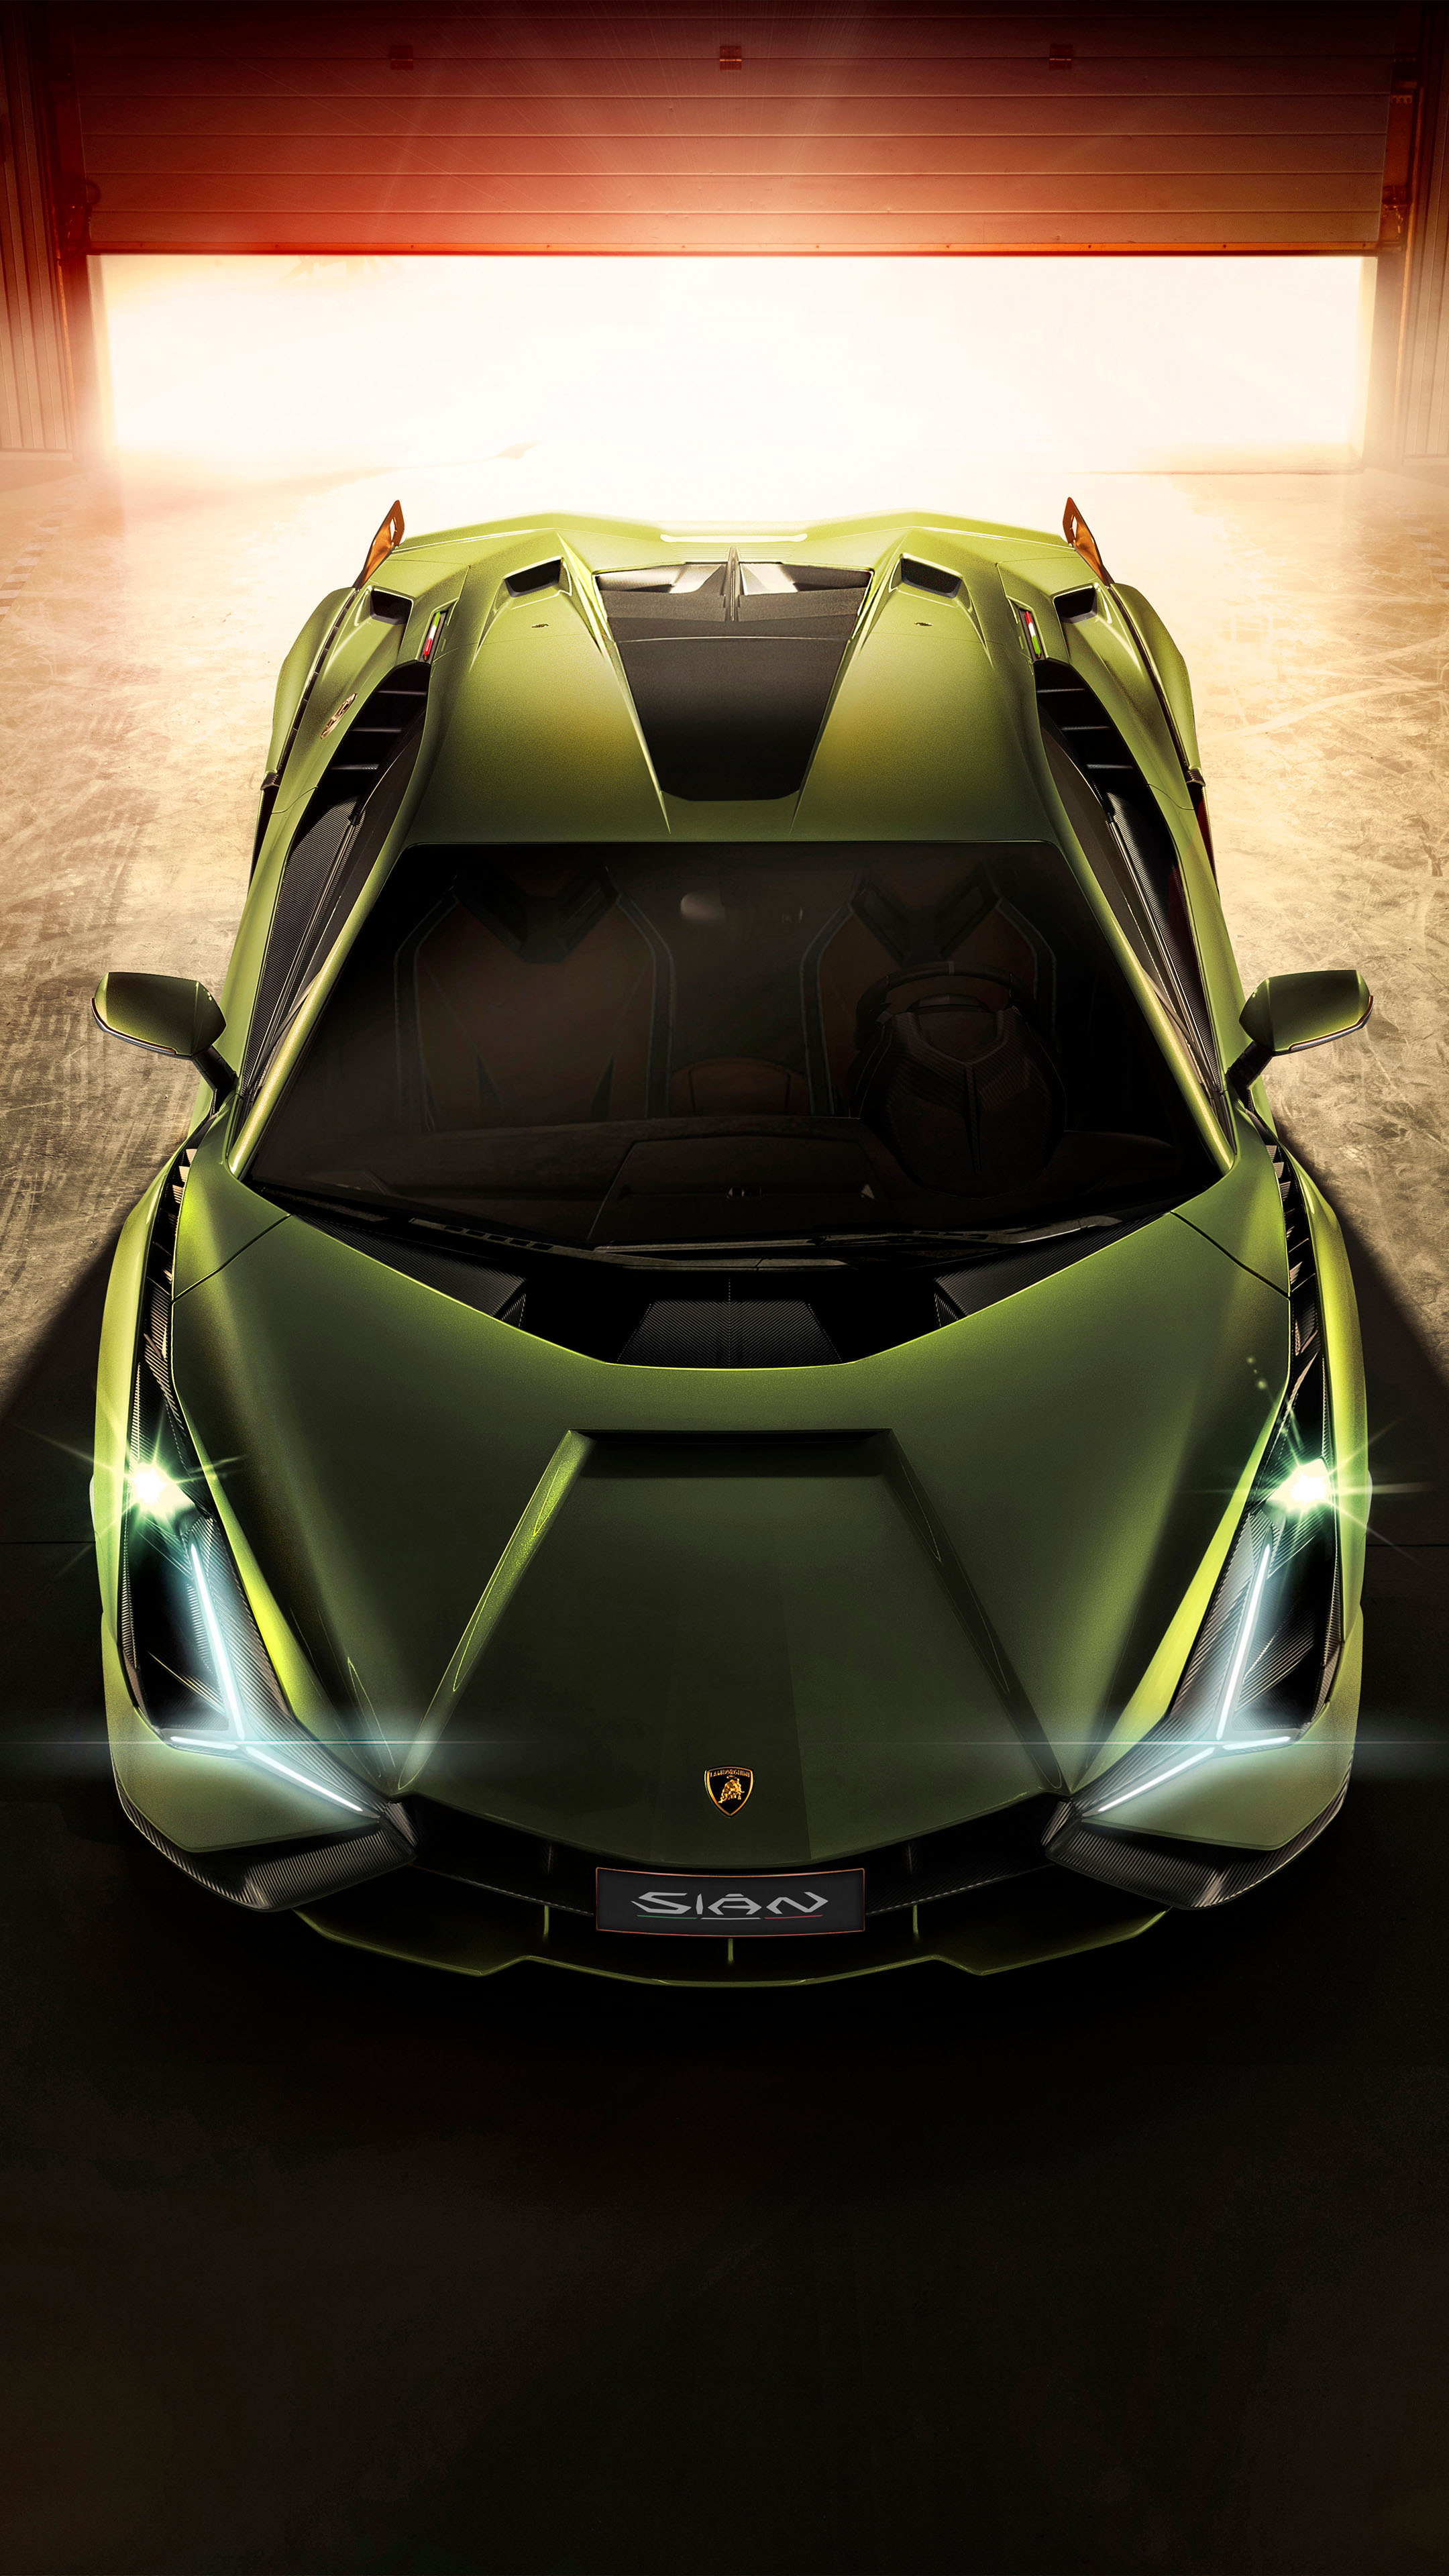 Lamborghini Hd Wallpapers For Mobile Download